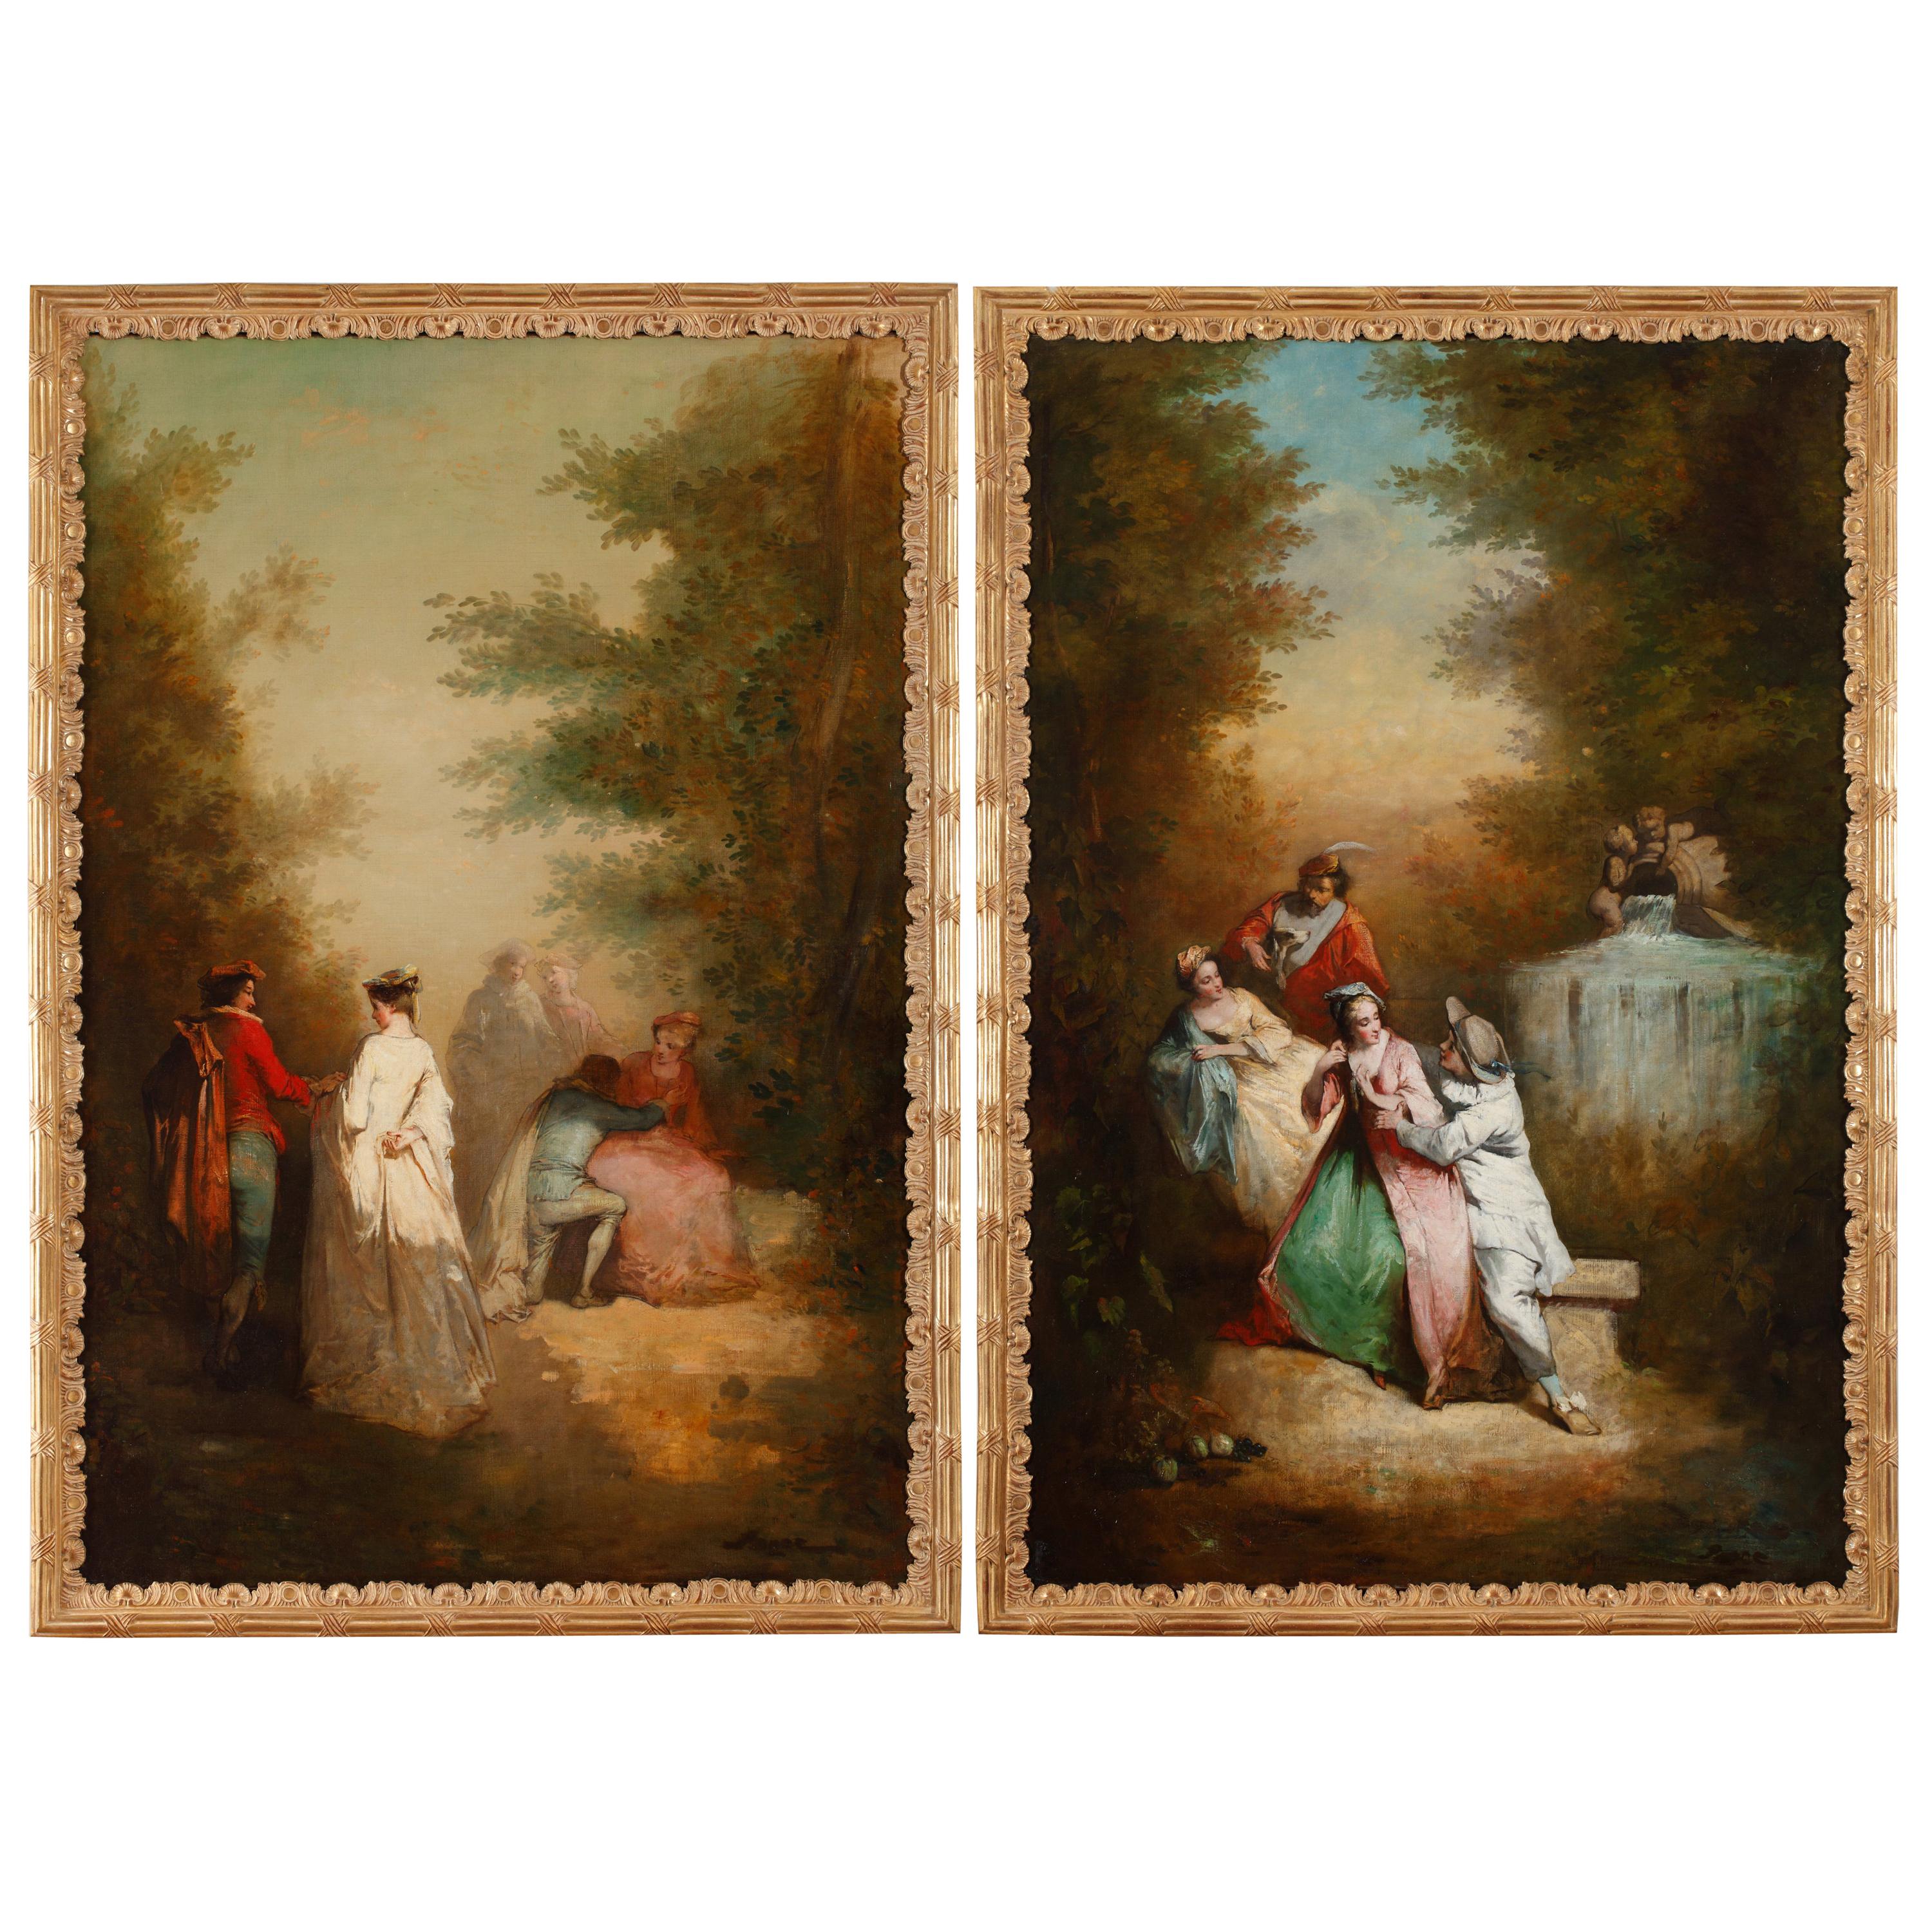 Gemälde „Ursprüngliche Liebe“ und „Unermüdliche Liebe“, Französische Schule, spätes 19. Jahrhundert